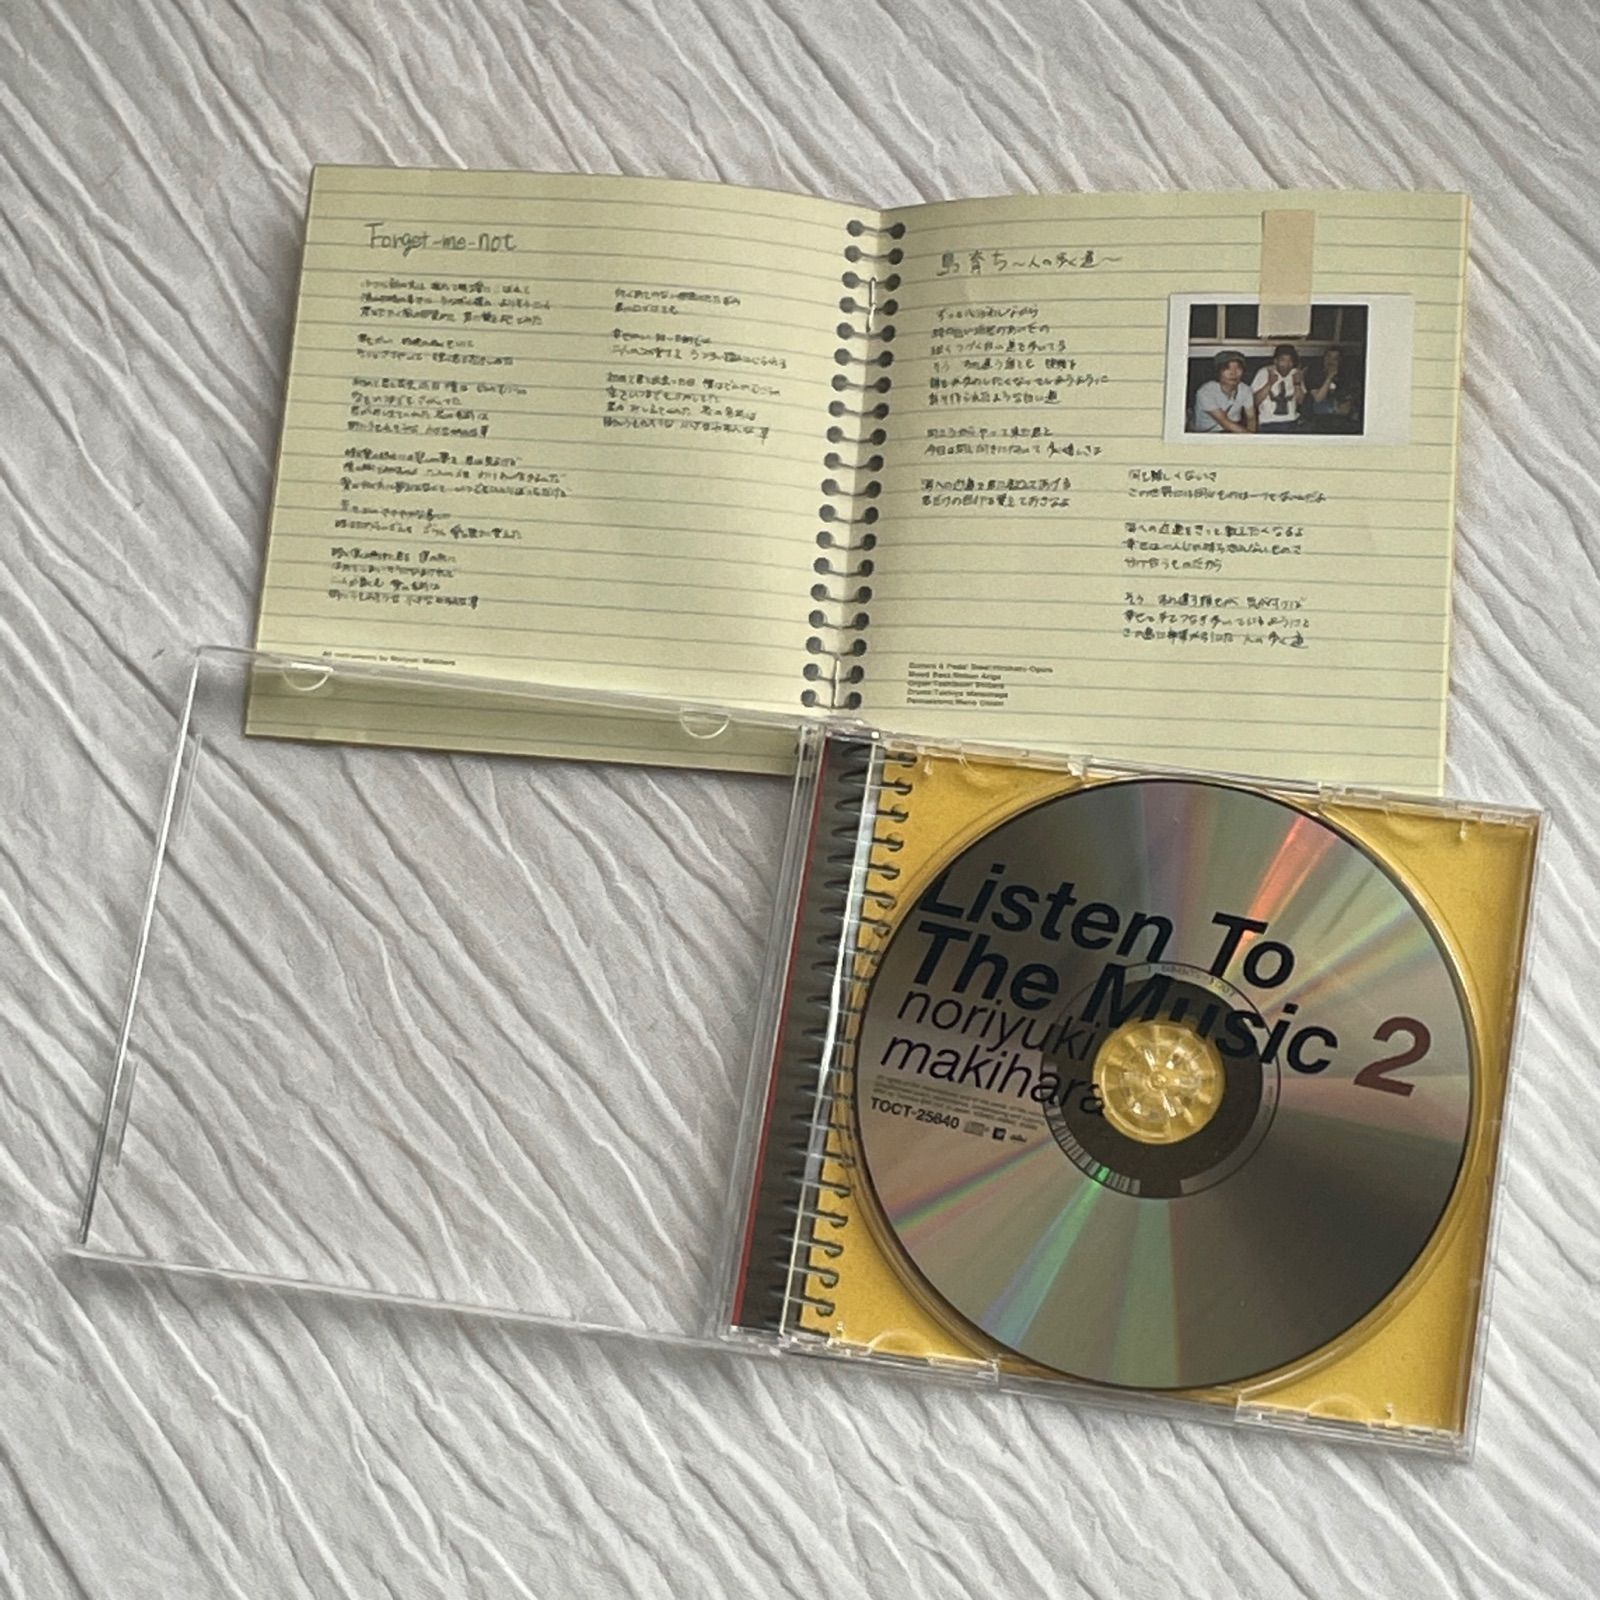 槇原敬之｜Listen To The Music 2（中古CD） - メルカリ